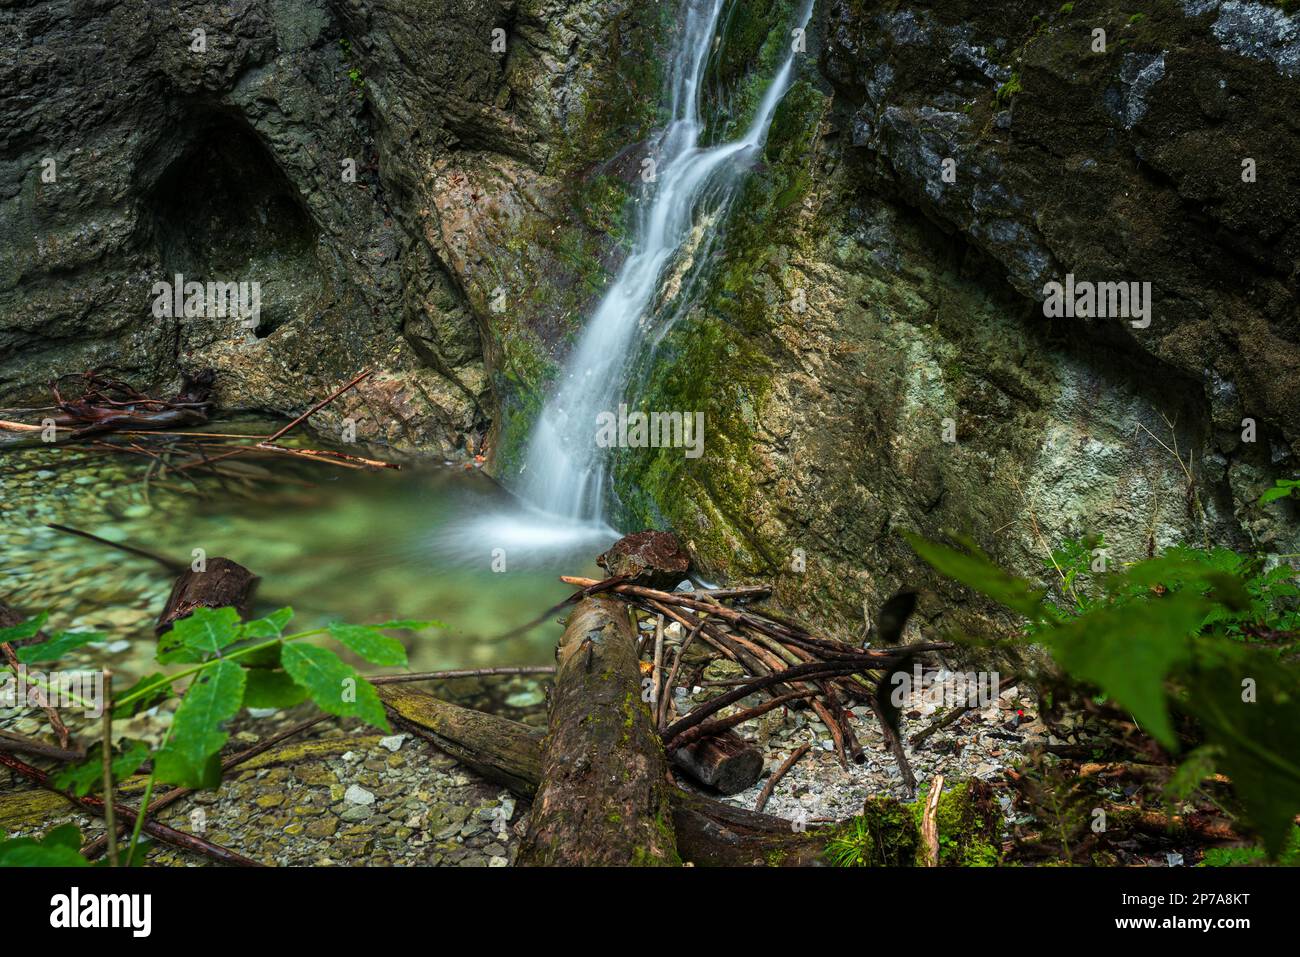 Une petite cascade sur le sentier de randonnée dans le parc national du Paradis Slovaque. Slovaquie, Parc national de Slowacki Raj, Slovaquie, Europe Banque D'Images